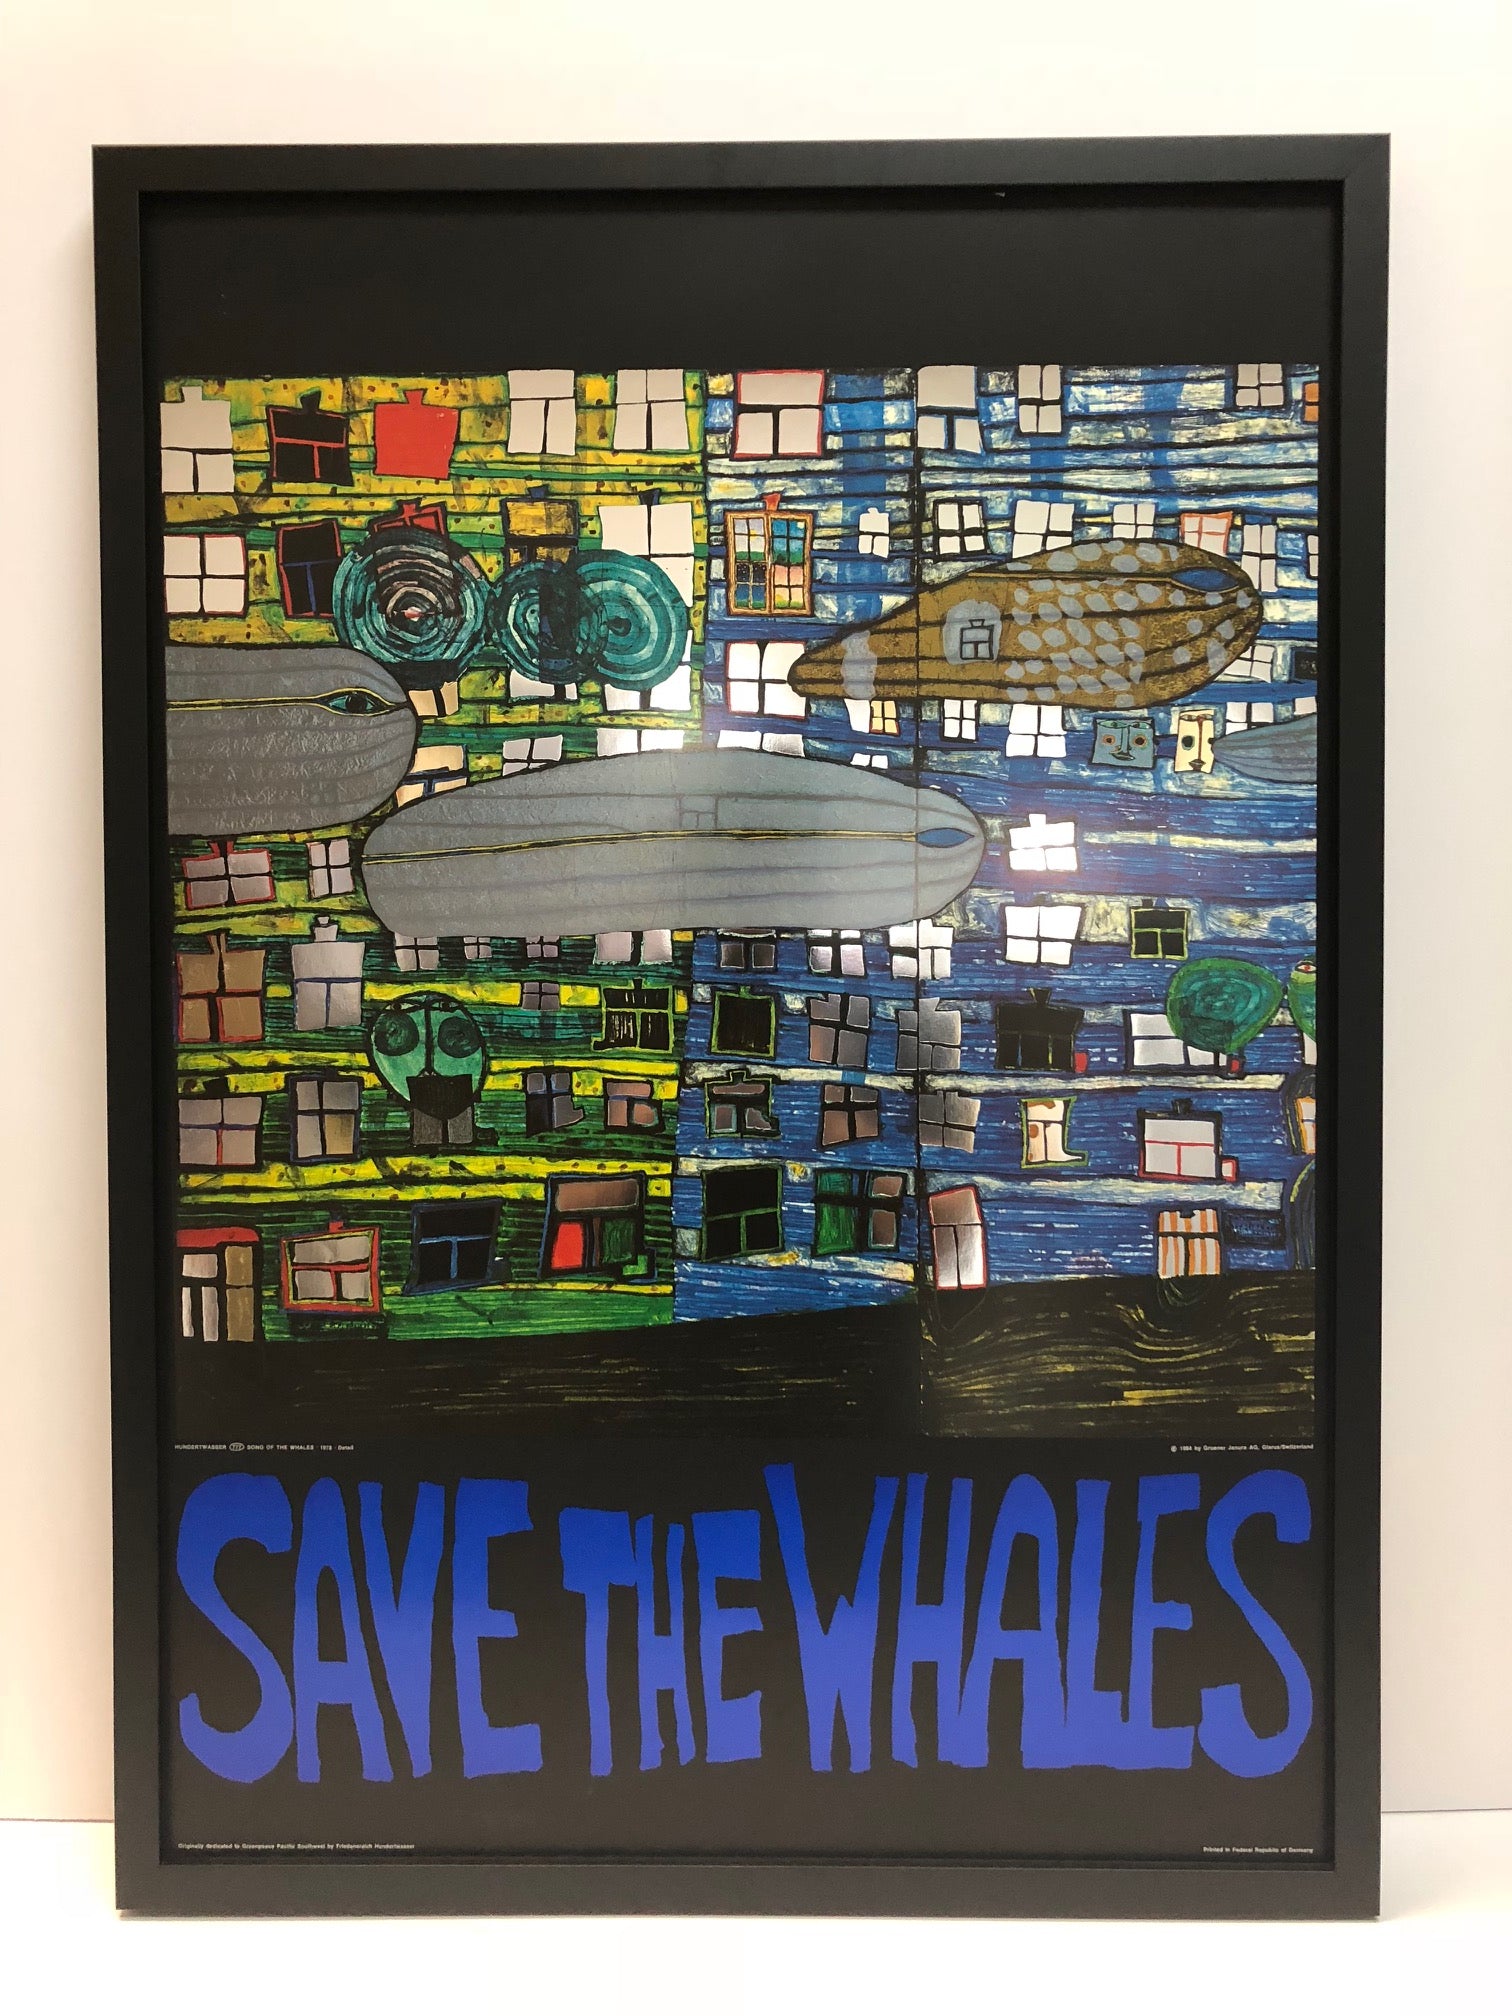 Friedensreich Hundertwasser "Save The Whales"